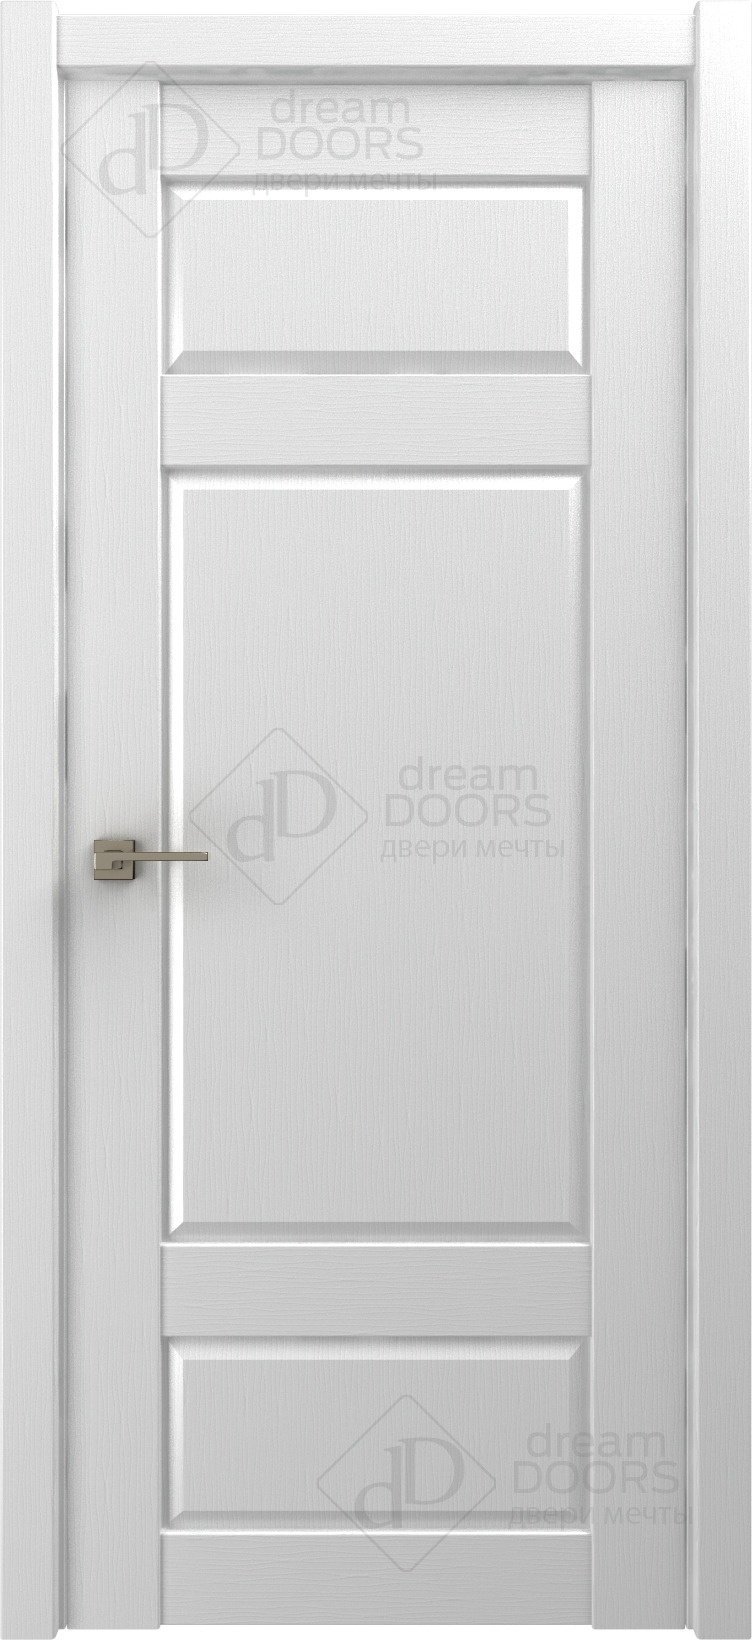 Dream Doors Межкомнатная дверь P15, арт. 18225 - фото №1